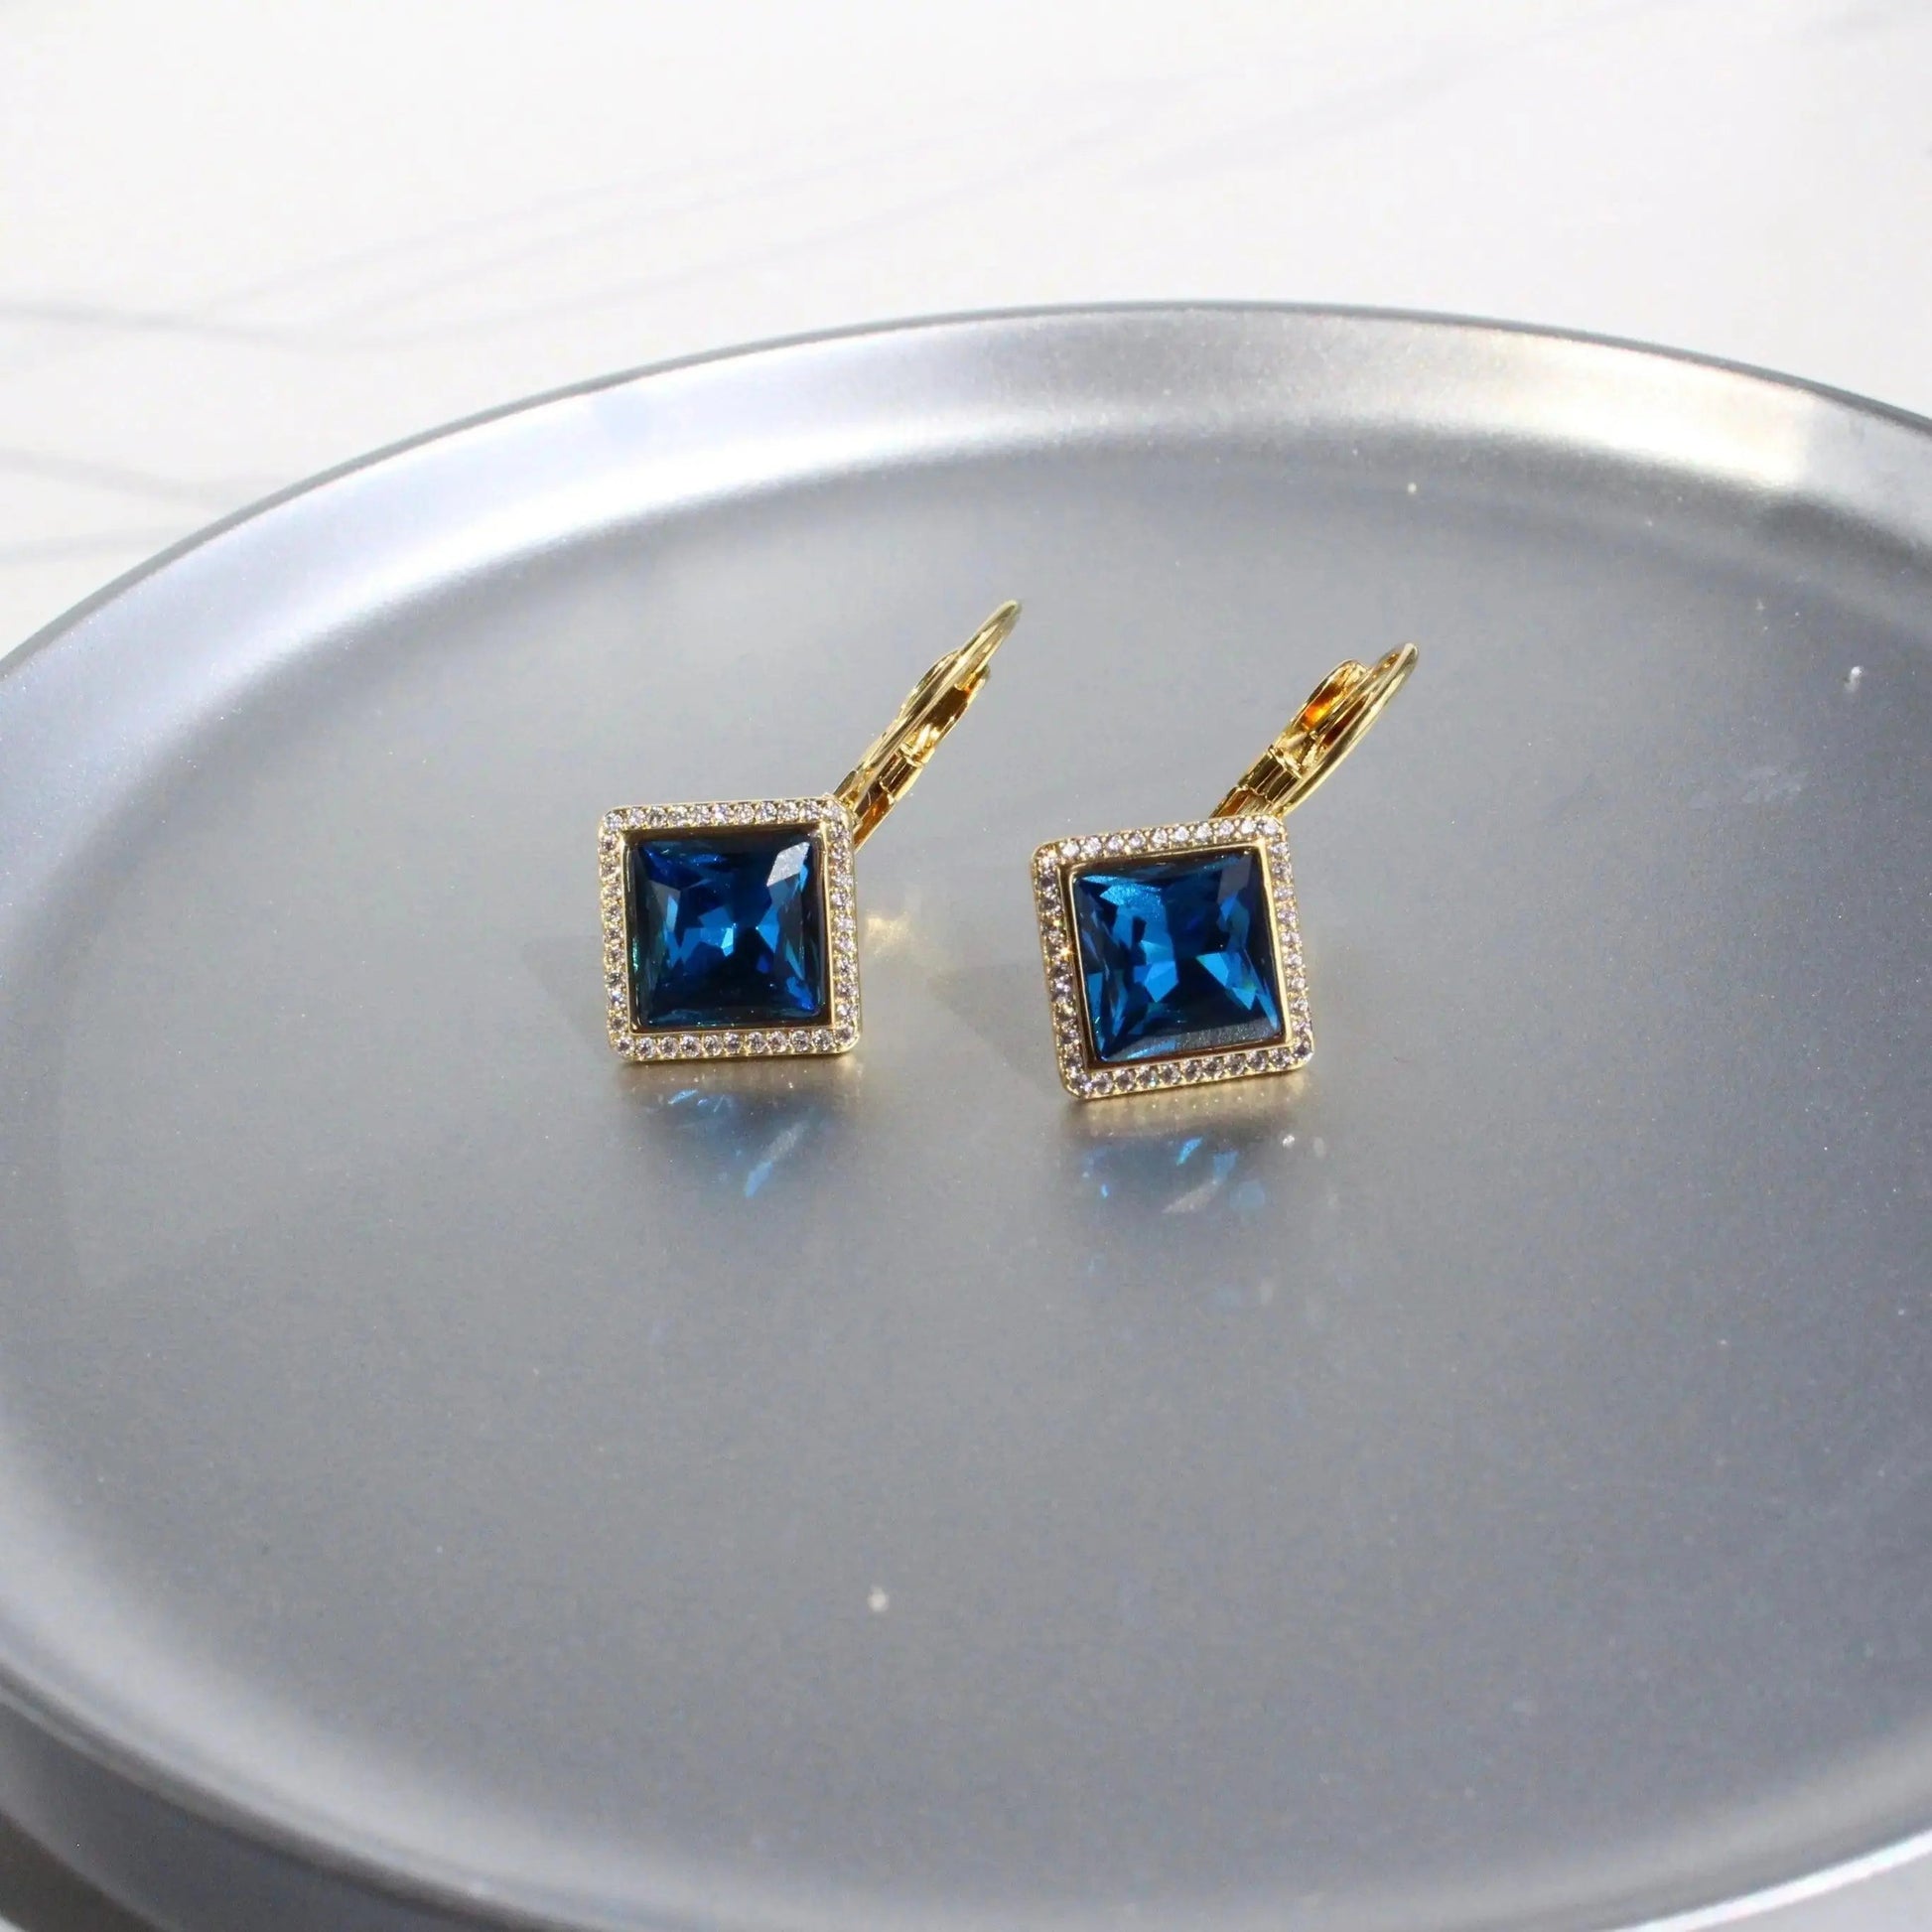 Ohrring blauer Kristall JK Jewelry & Accessories